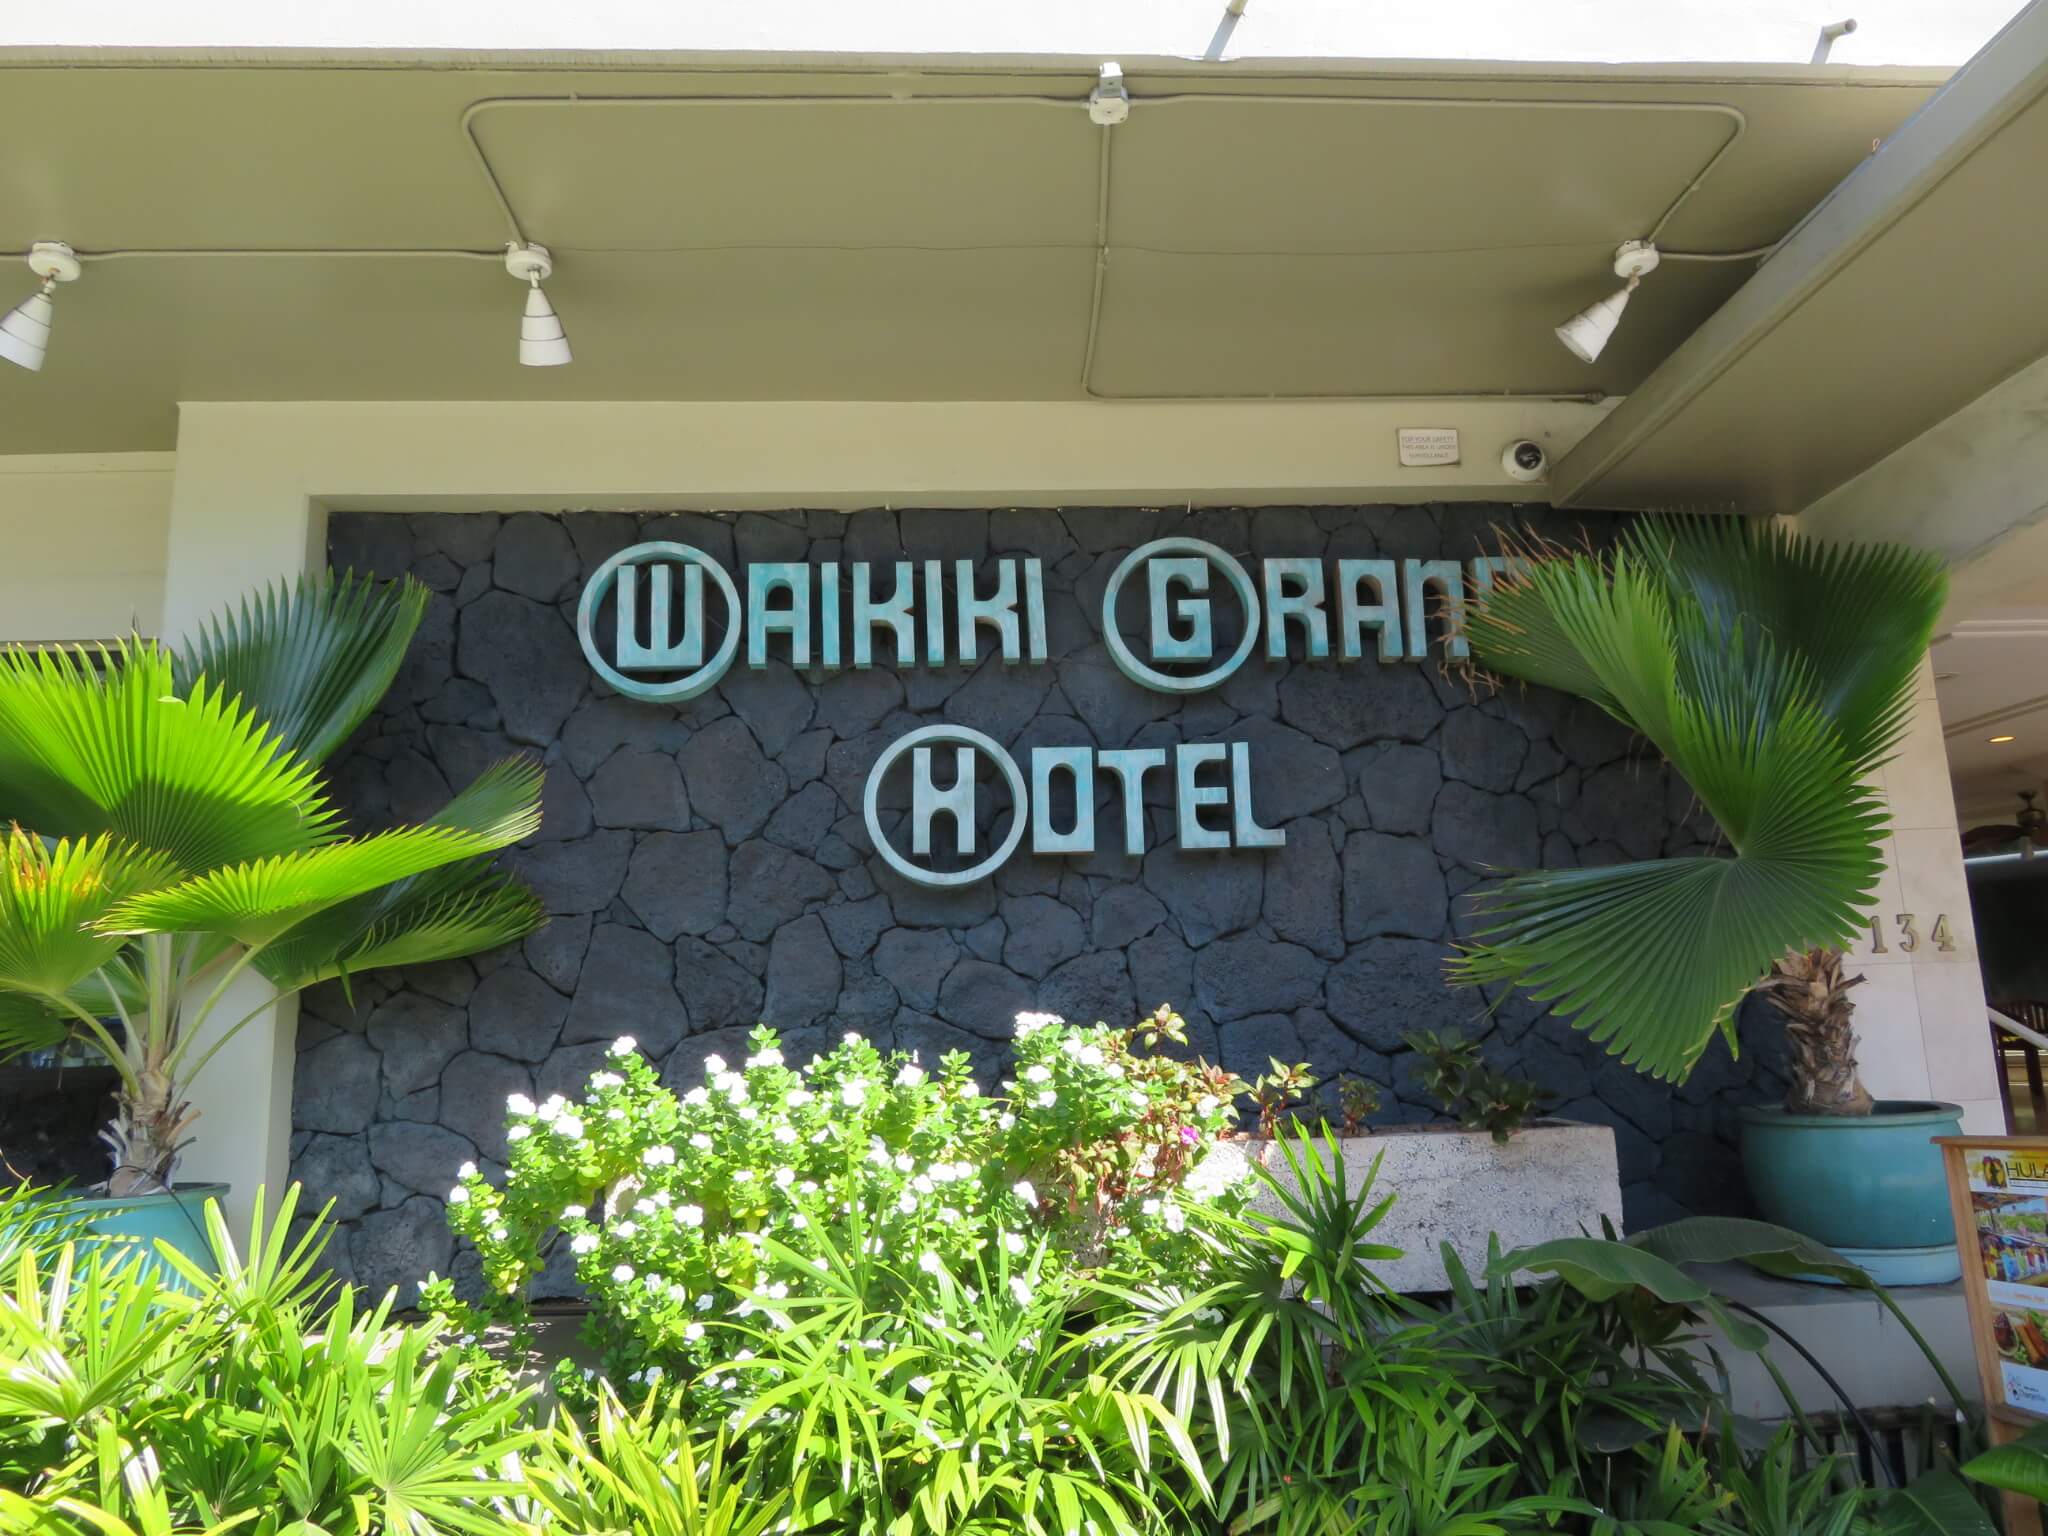 ワイキキ・グランドホテル / Waikiki Grand Hotel